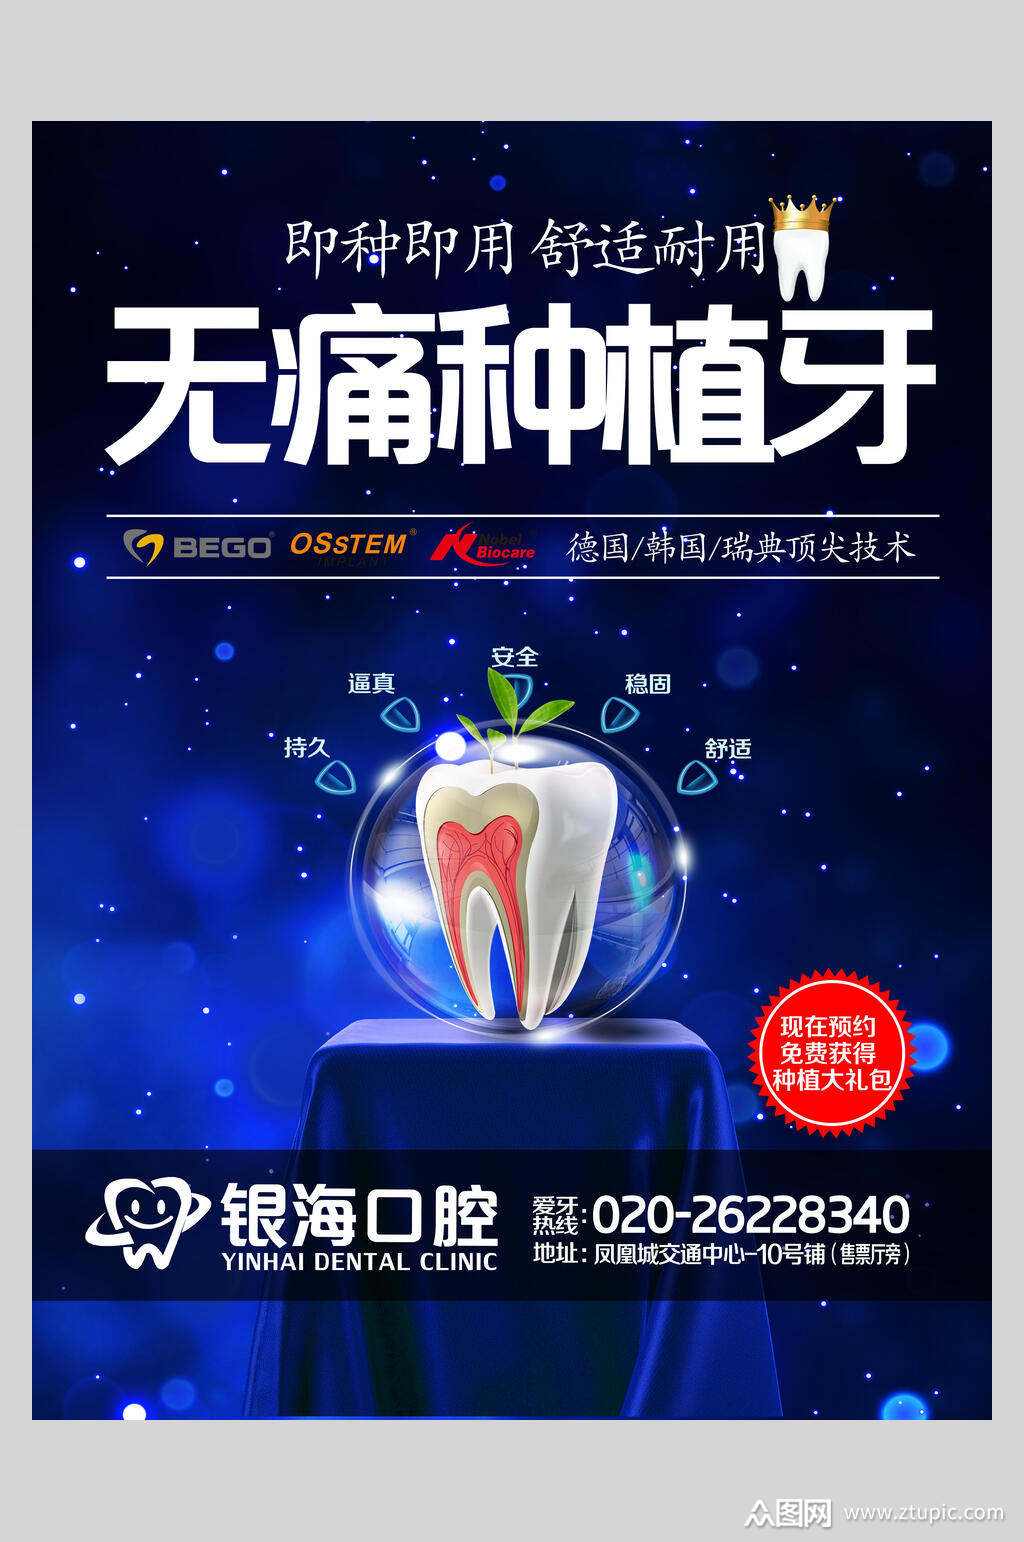 种植牙牙医牙科海报素材免费下载,本作品是由小梁上传的原创平面广告